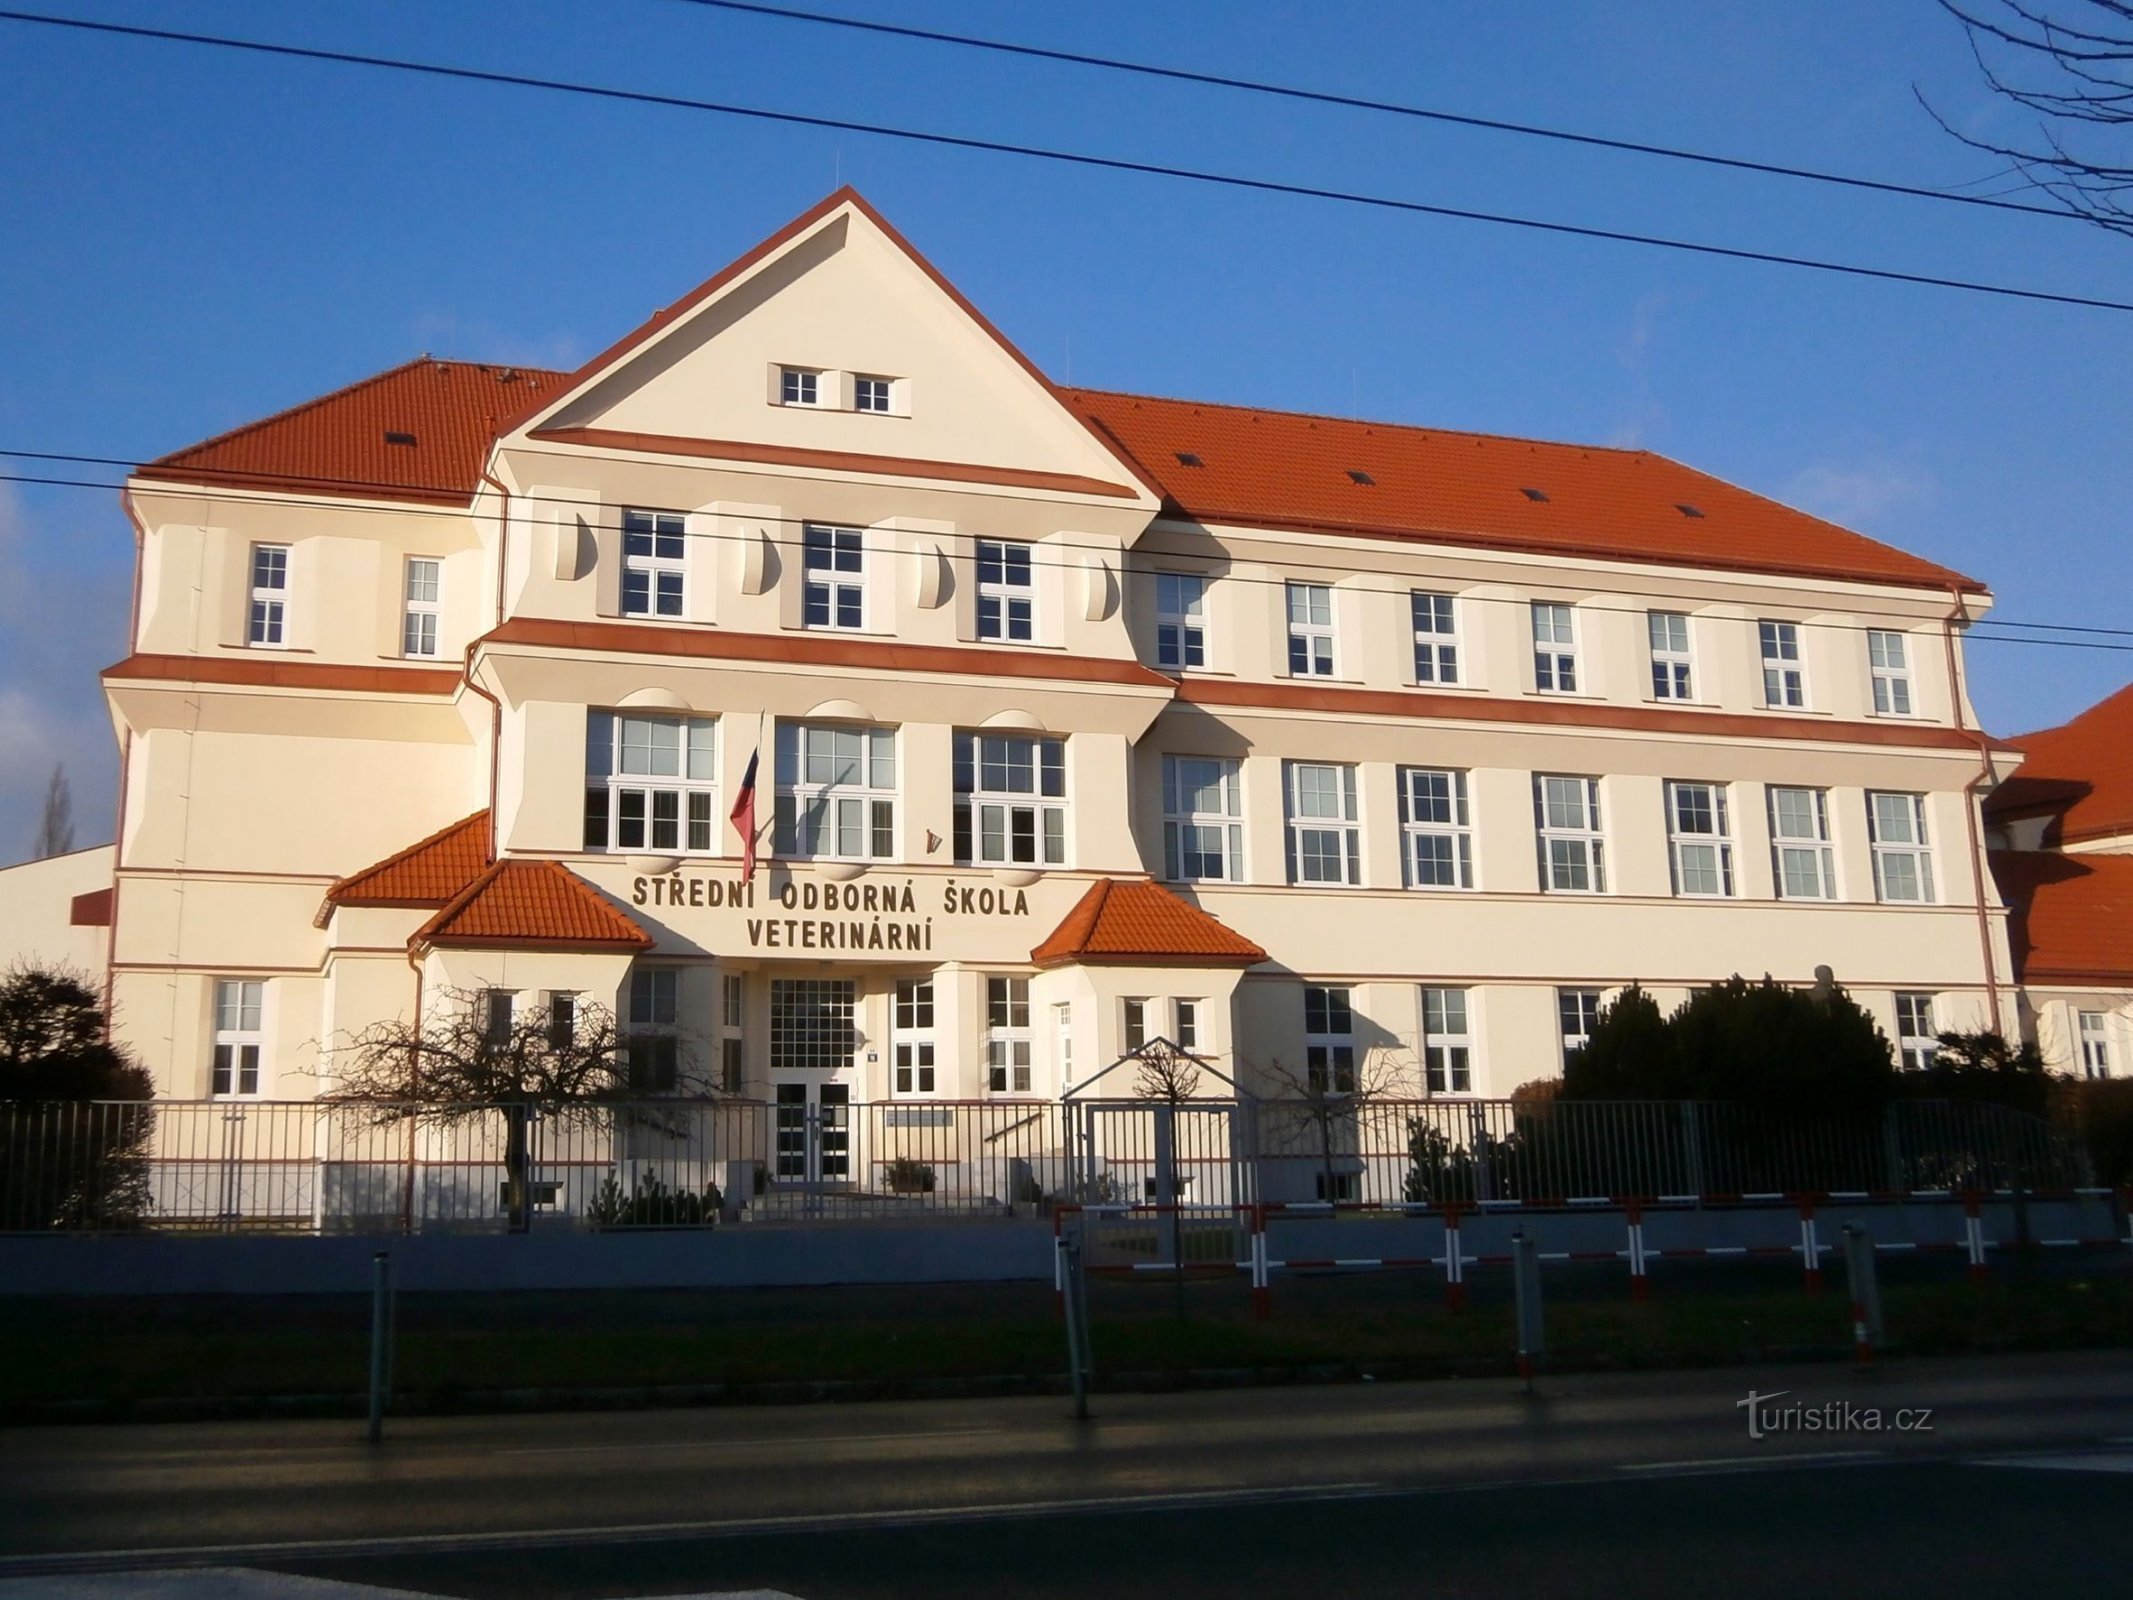 Diện mạo hiện tại của tòa nhà Trường Kinh tế dạy nghề ở Kukleny (Hradec Králové, ngày 4.1.2015 tháng XNUMX năm XNUMX)